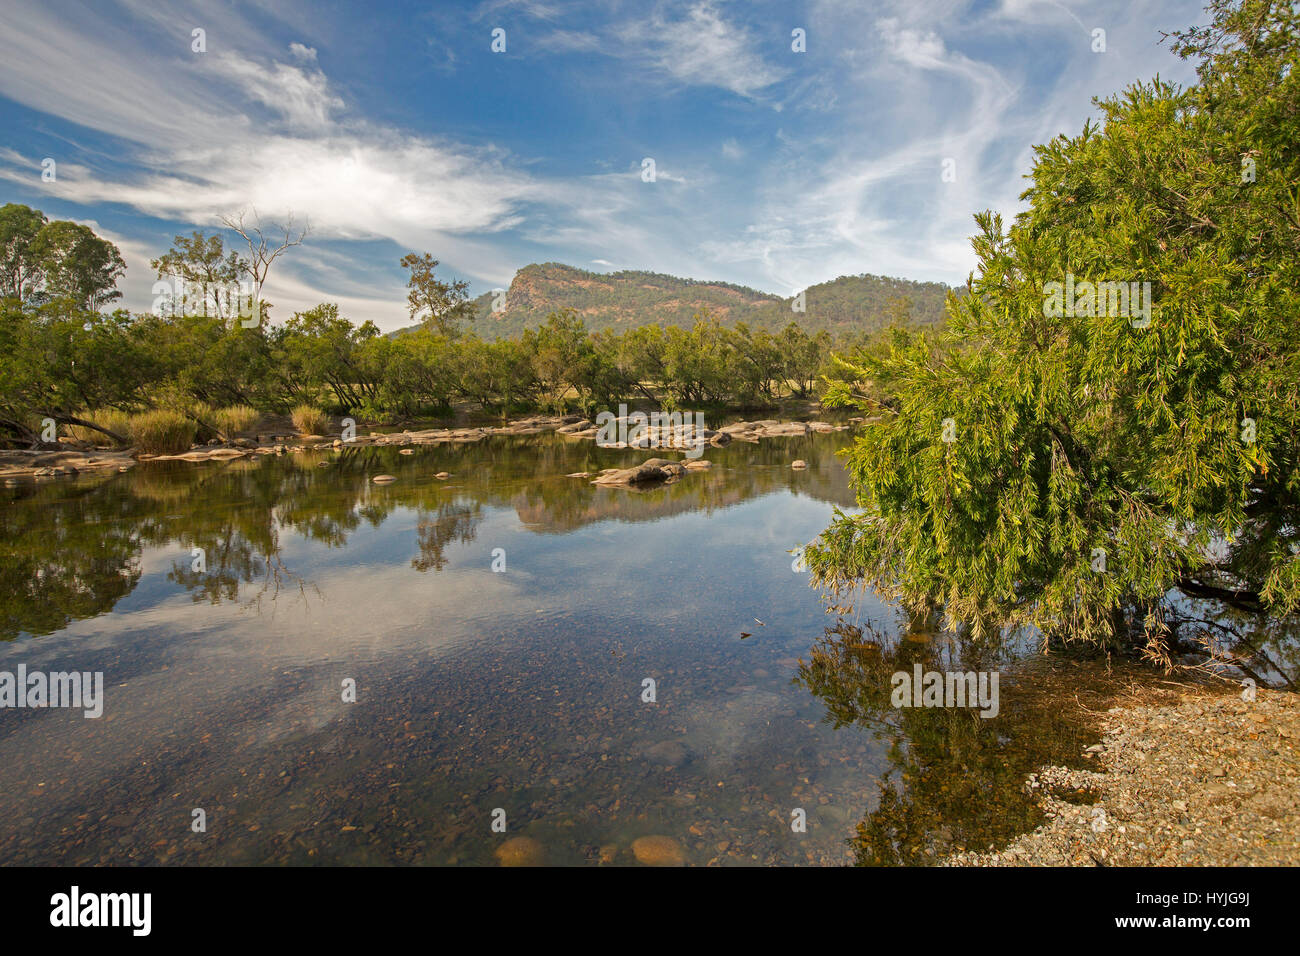 Mann ourlé à la rivière et les forêts avec des crêtes de plages à l'horizon avec bleu ciel & nuages reflètent dans l'eau de surface miroir, Coombadja , Australie Banque D'Images